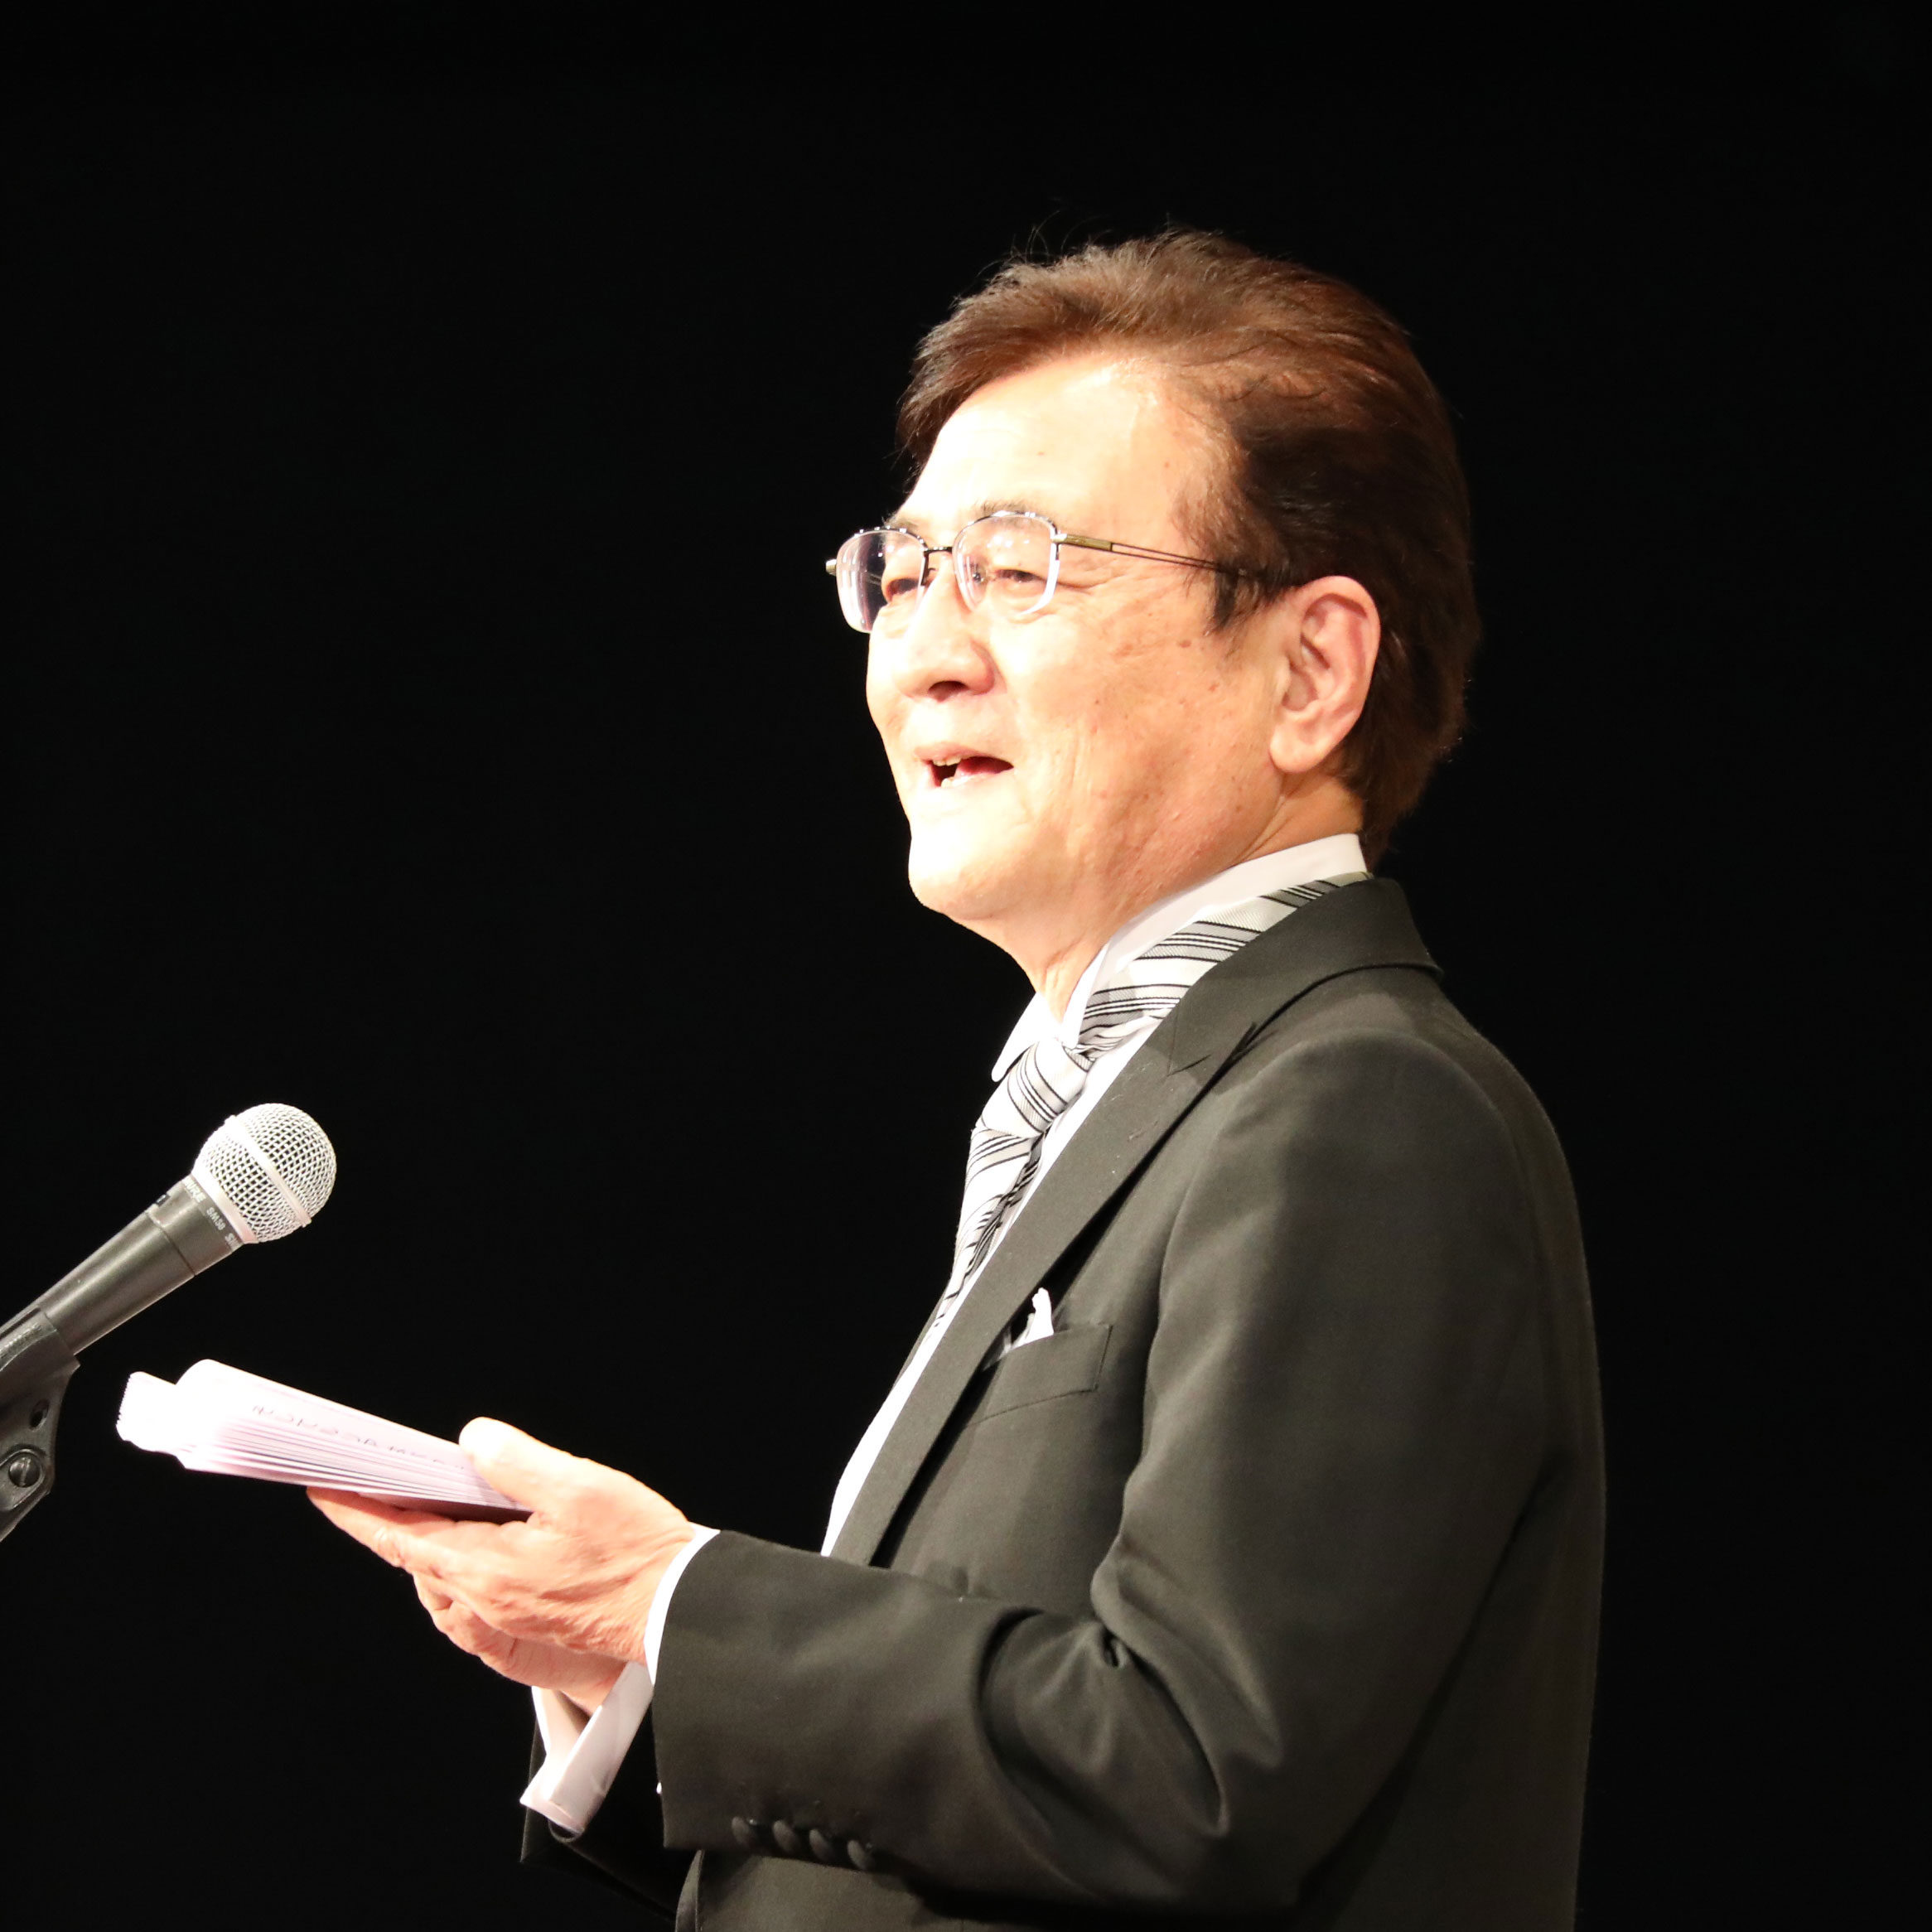 Nagahiro Minato, 27th President